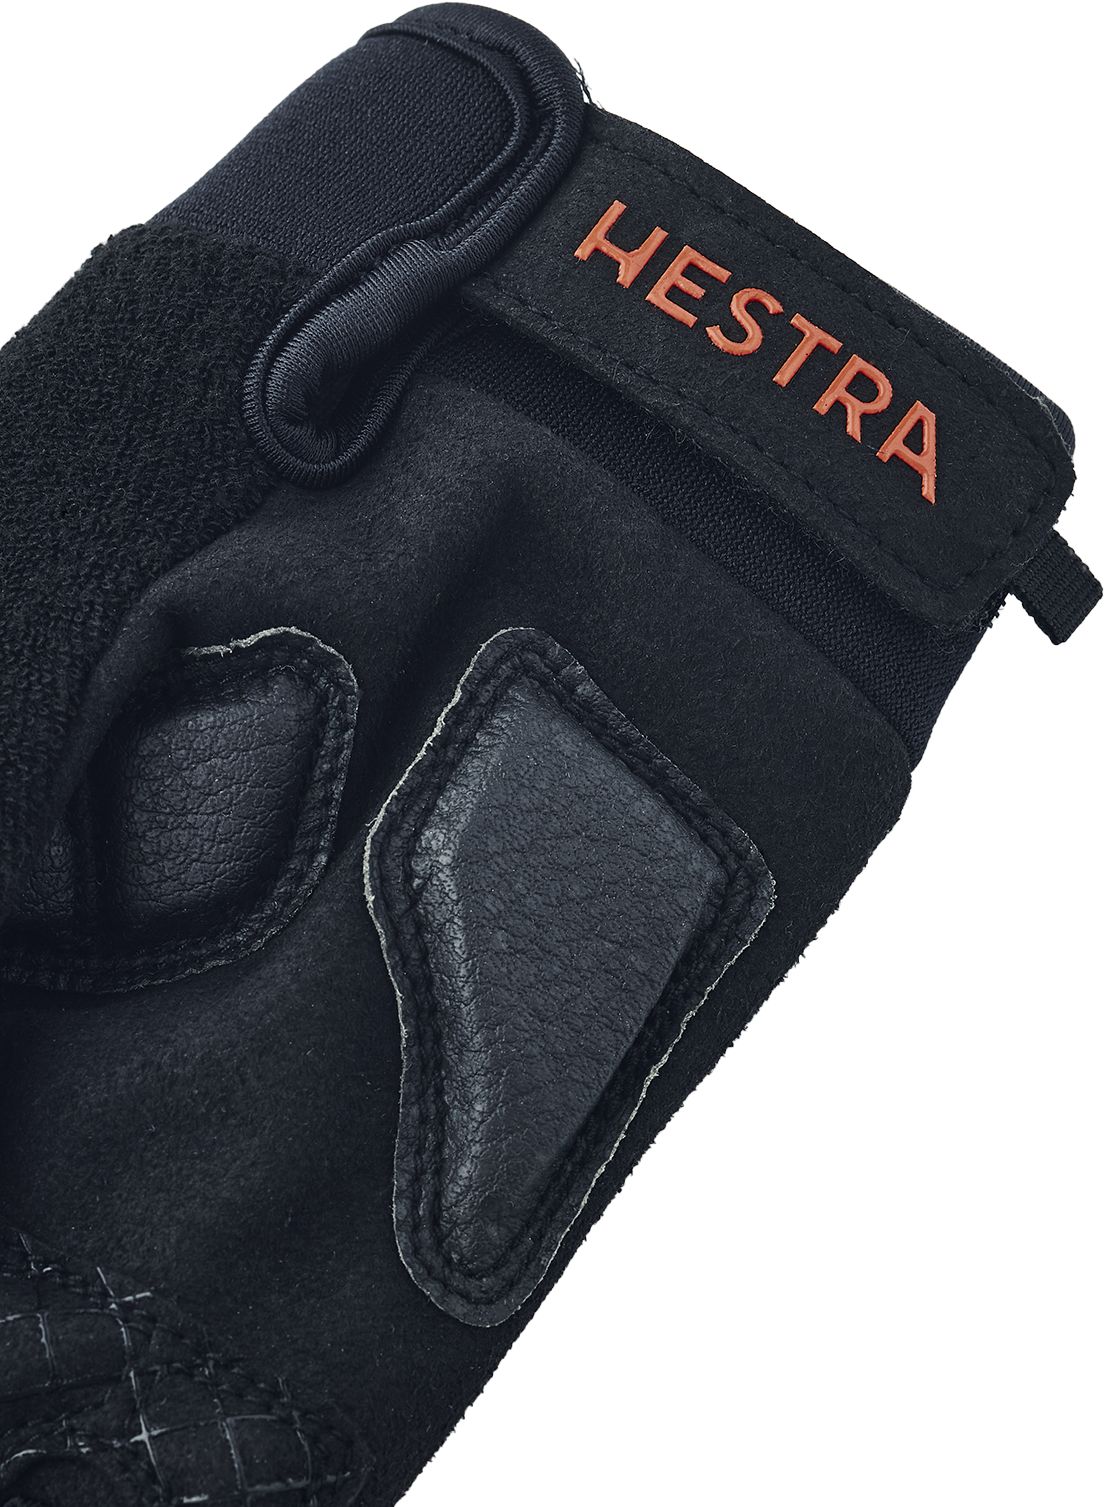 HESTRA, Bike Guard Long - 5 finger